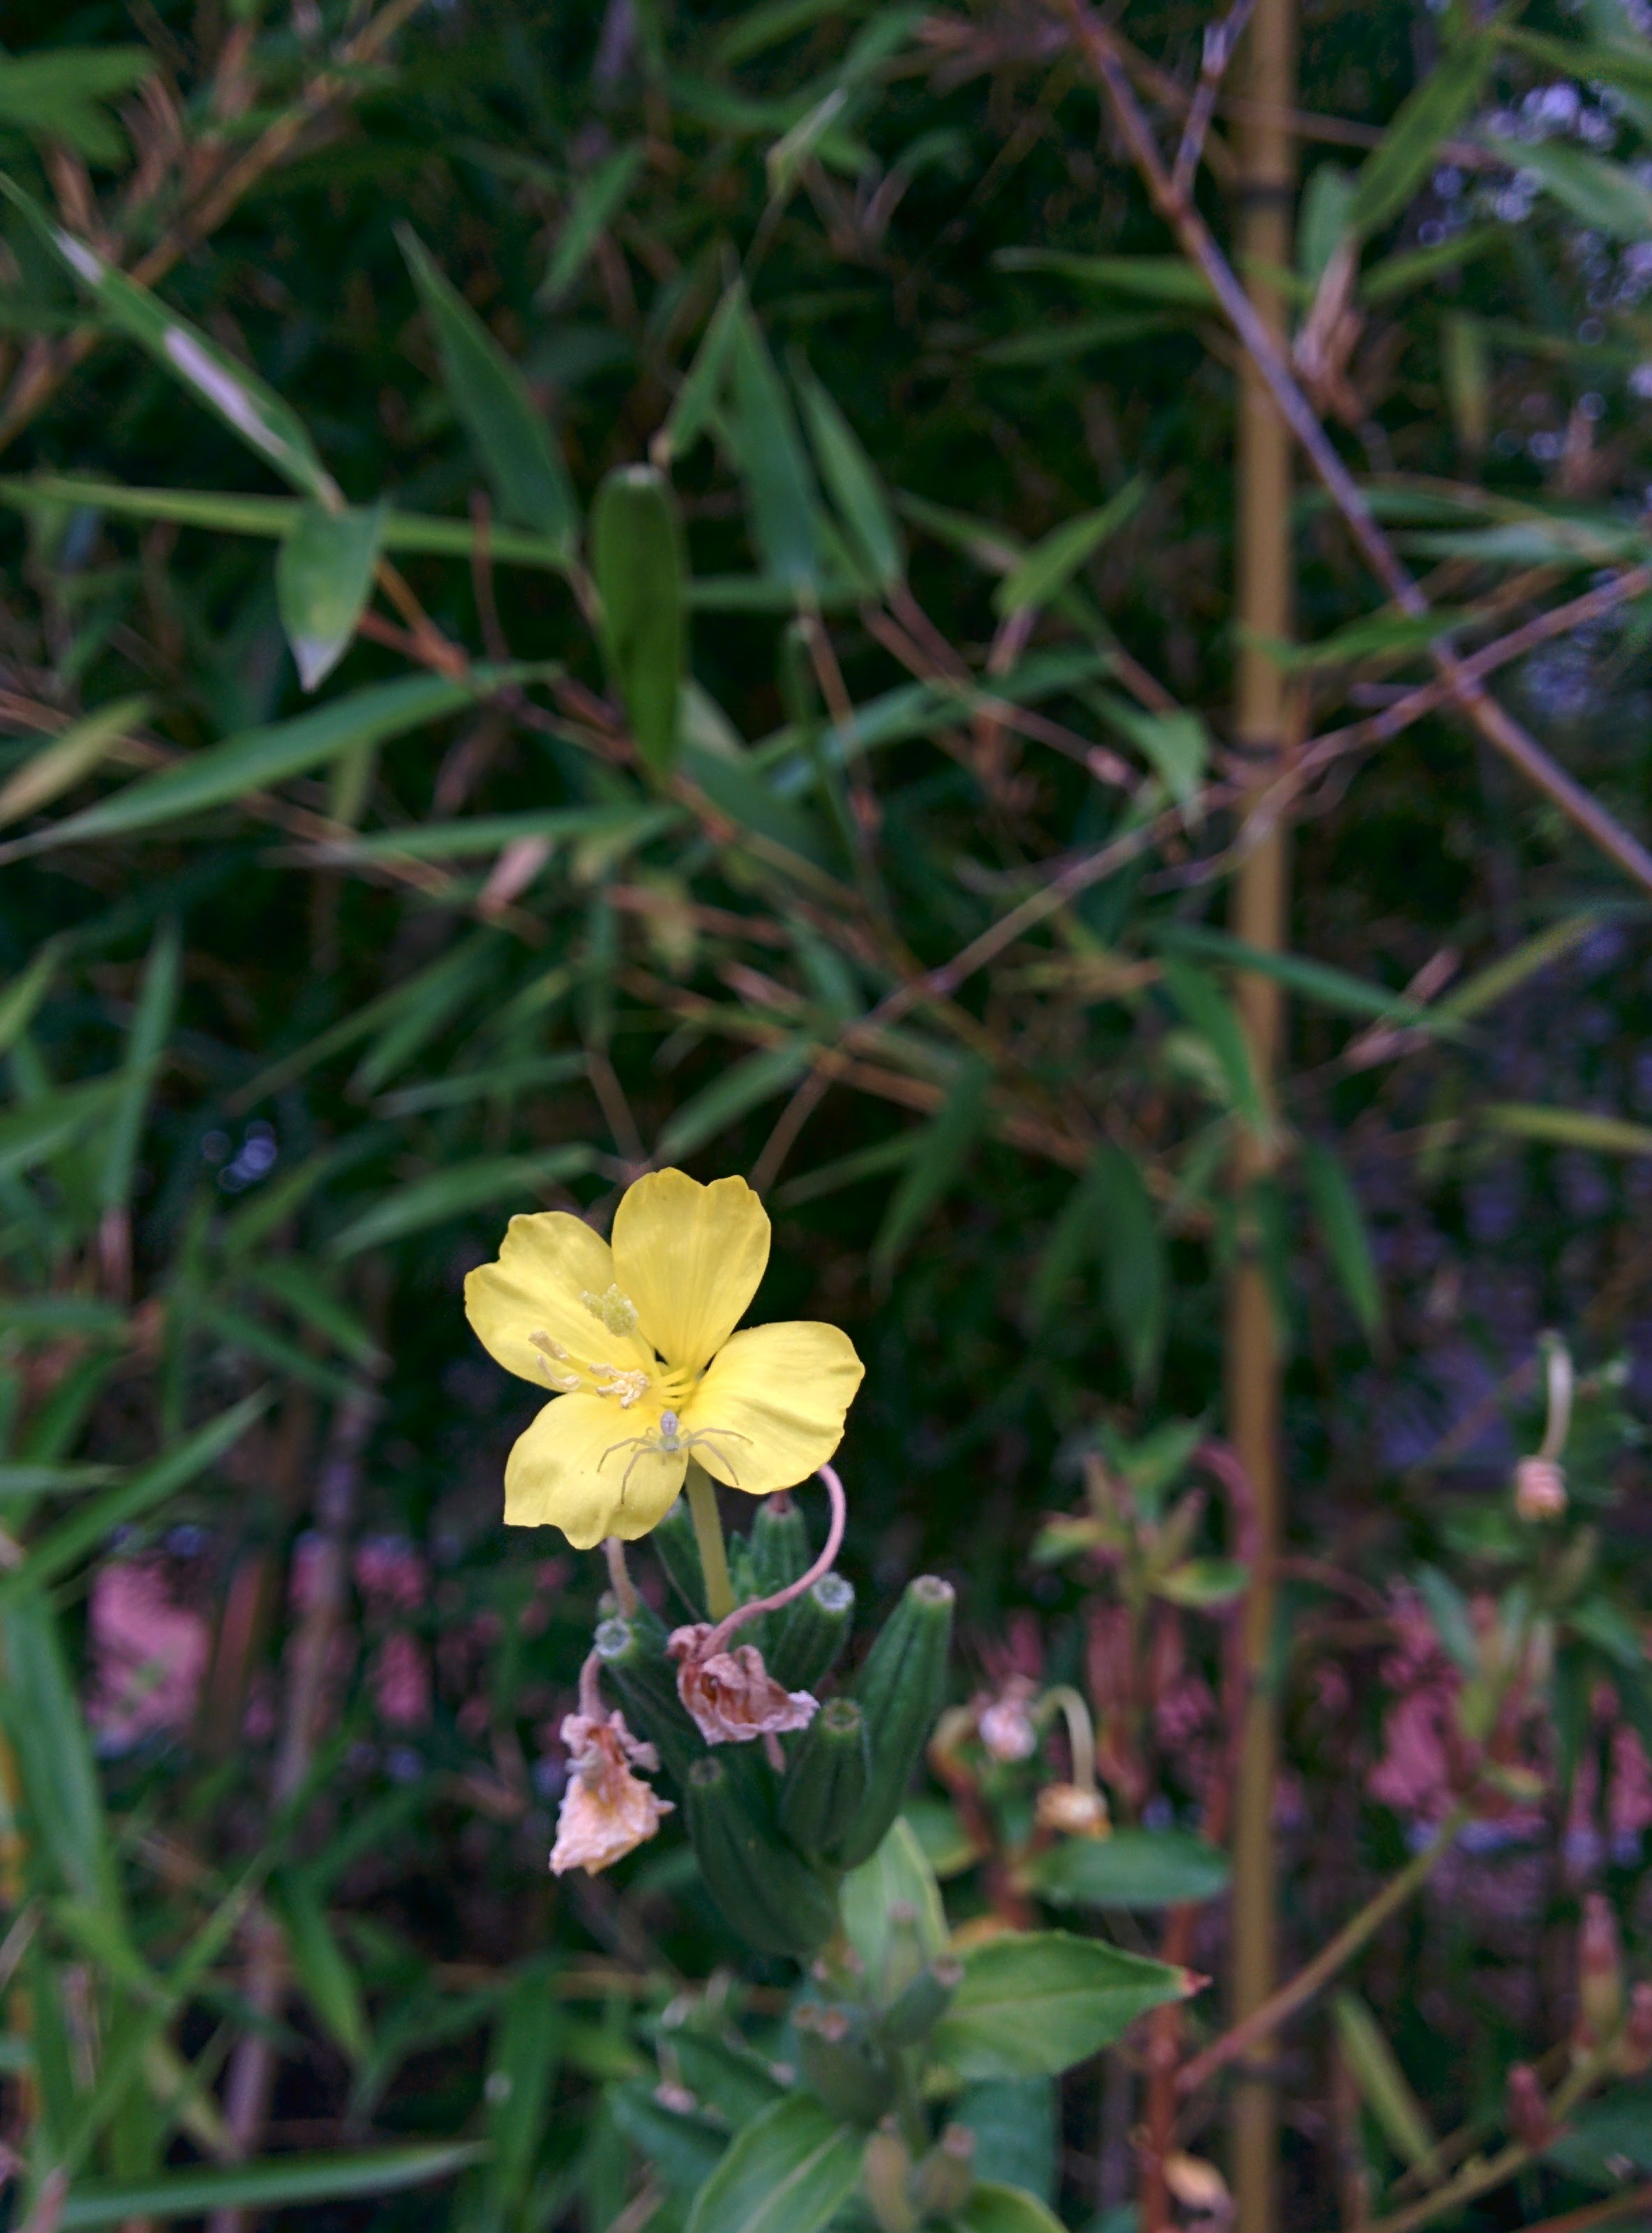 IMG_20150916_165224.jpg 대나무숲에서 노란 꽃을 피운 달맞이꽃